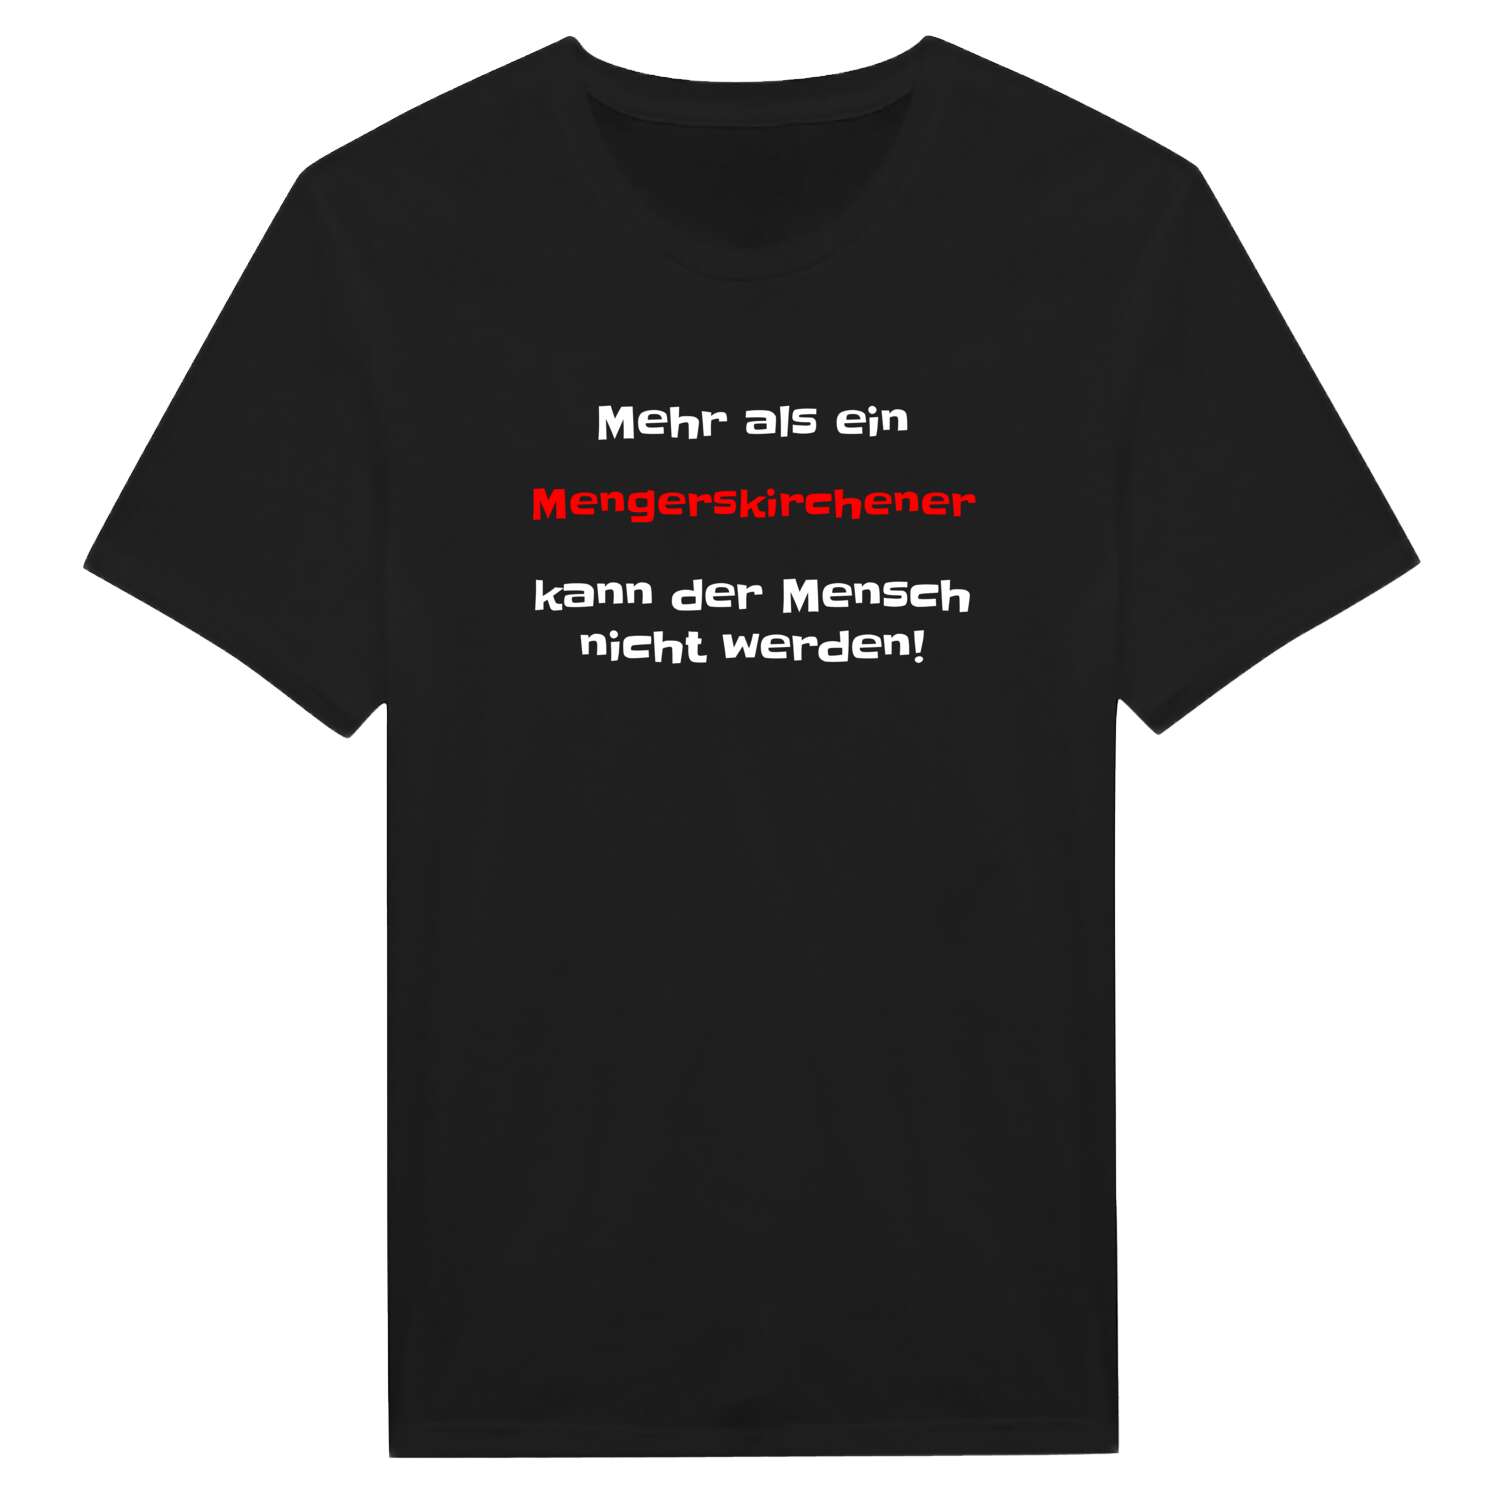 Mengerskirchen T-Shirt »Mehr als ein«